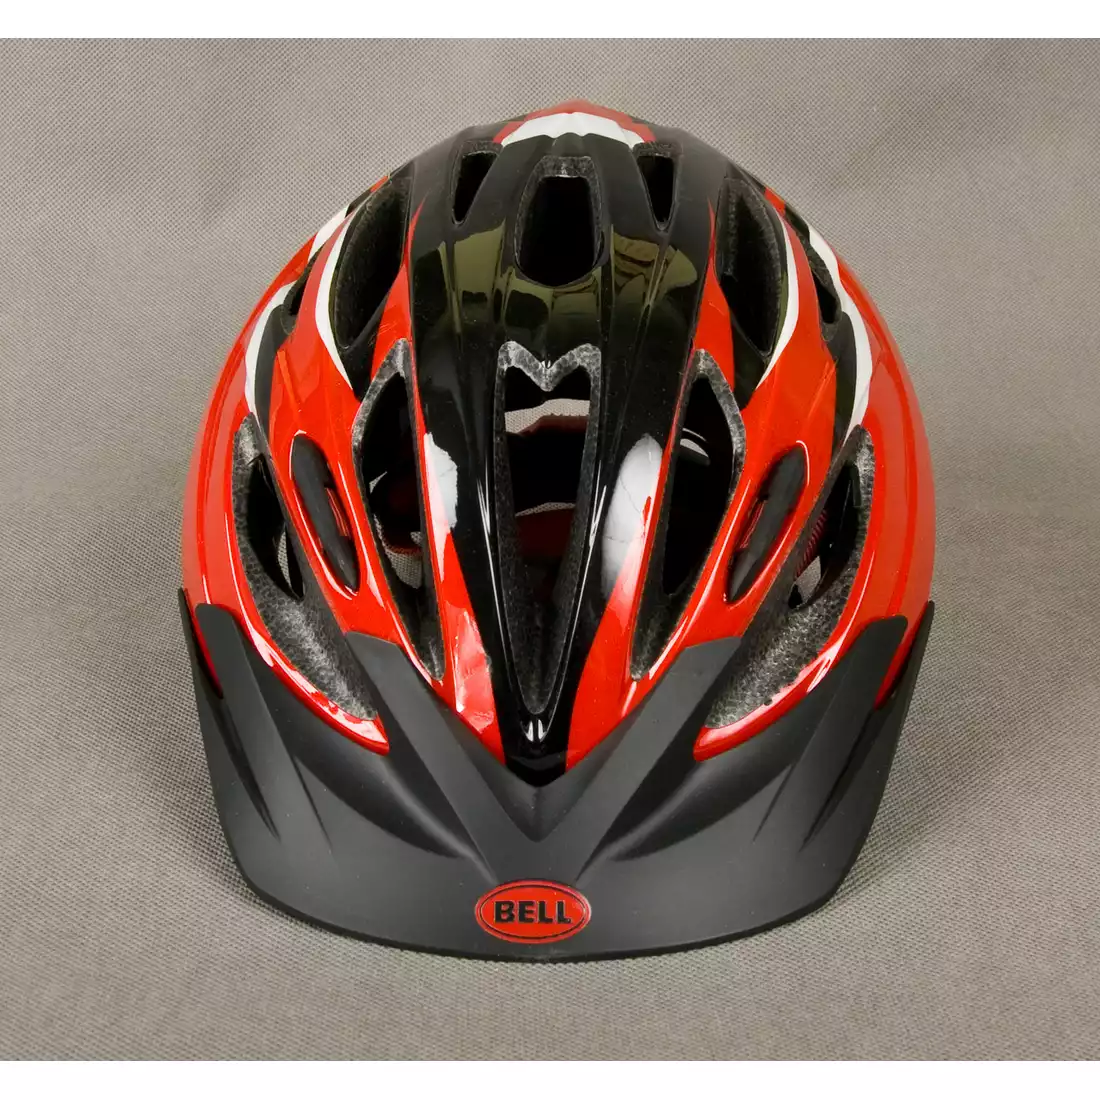 BELL PRESIDIO - kask rowerowy, kolor: Czerwono-czarny